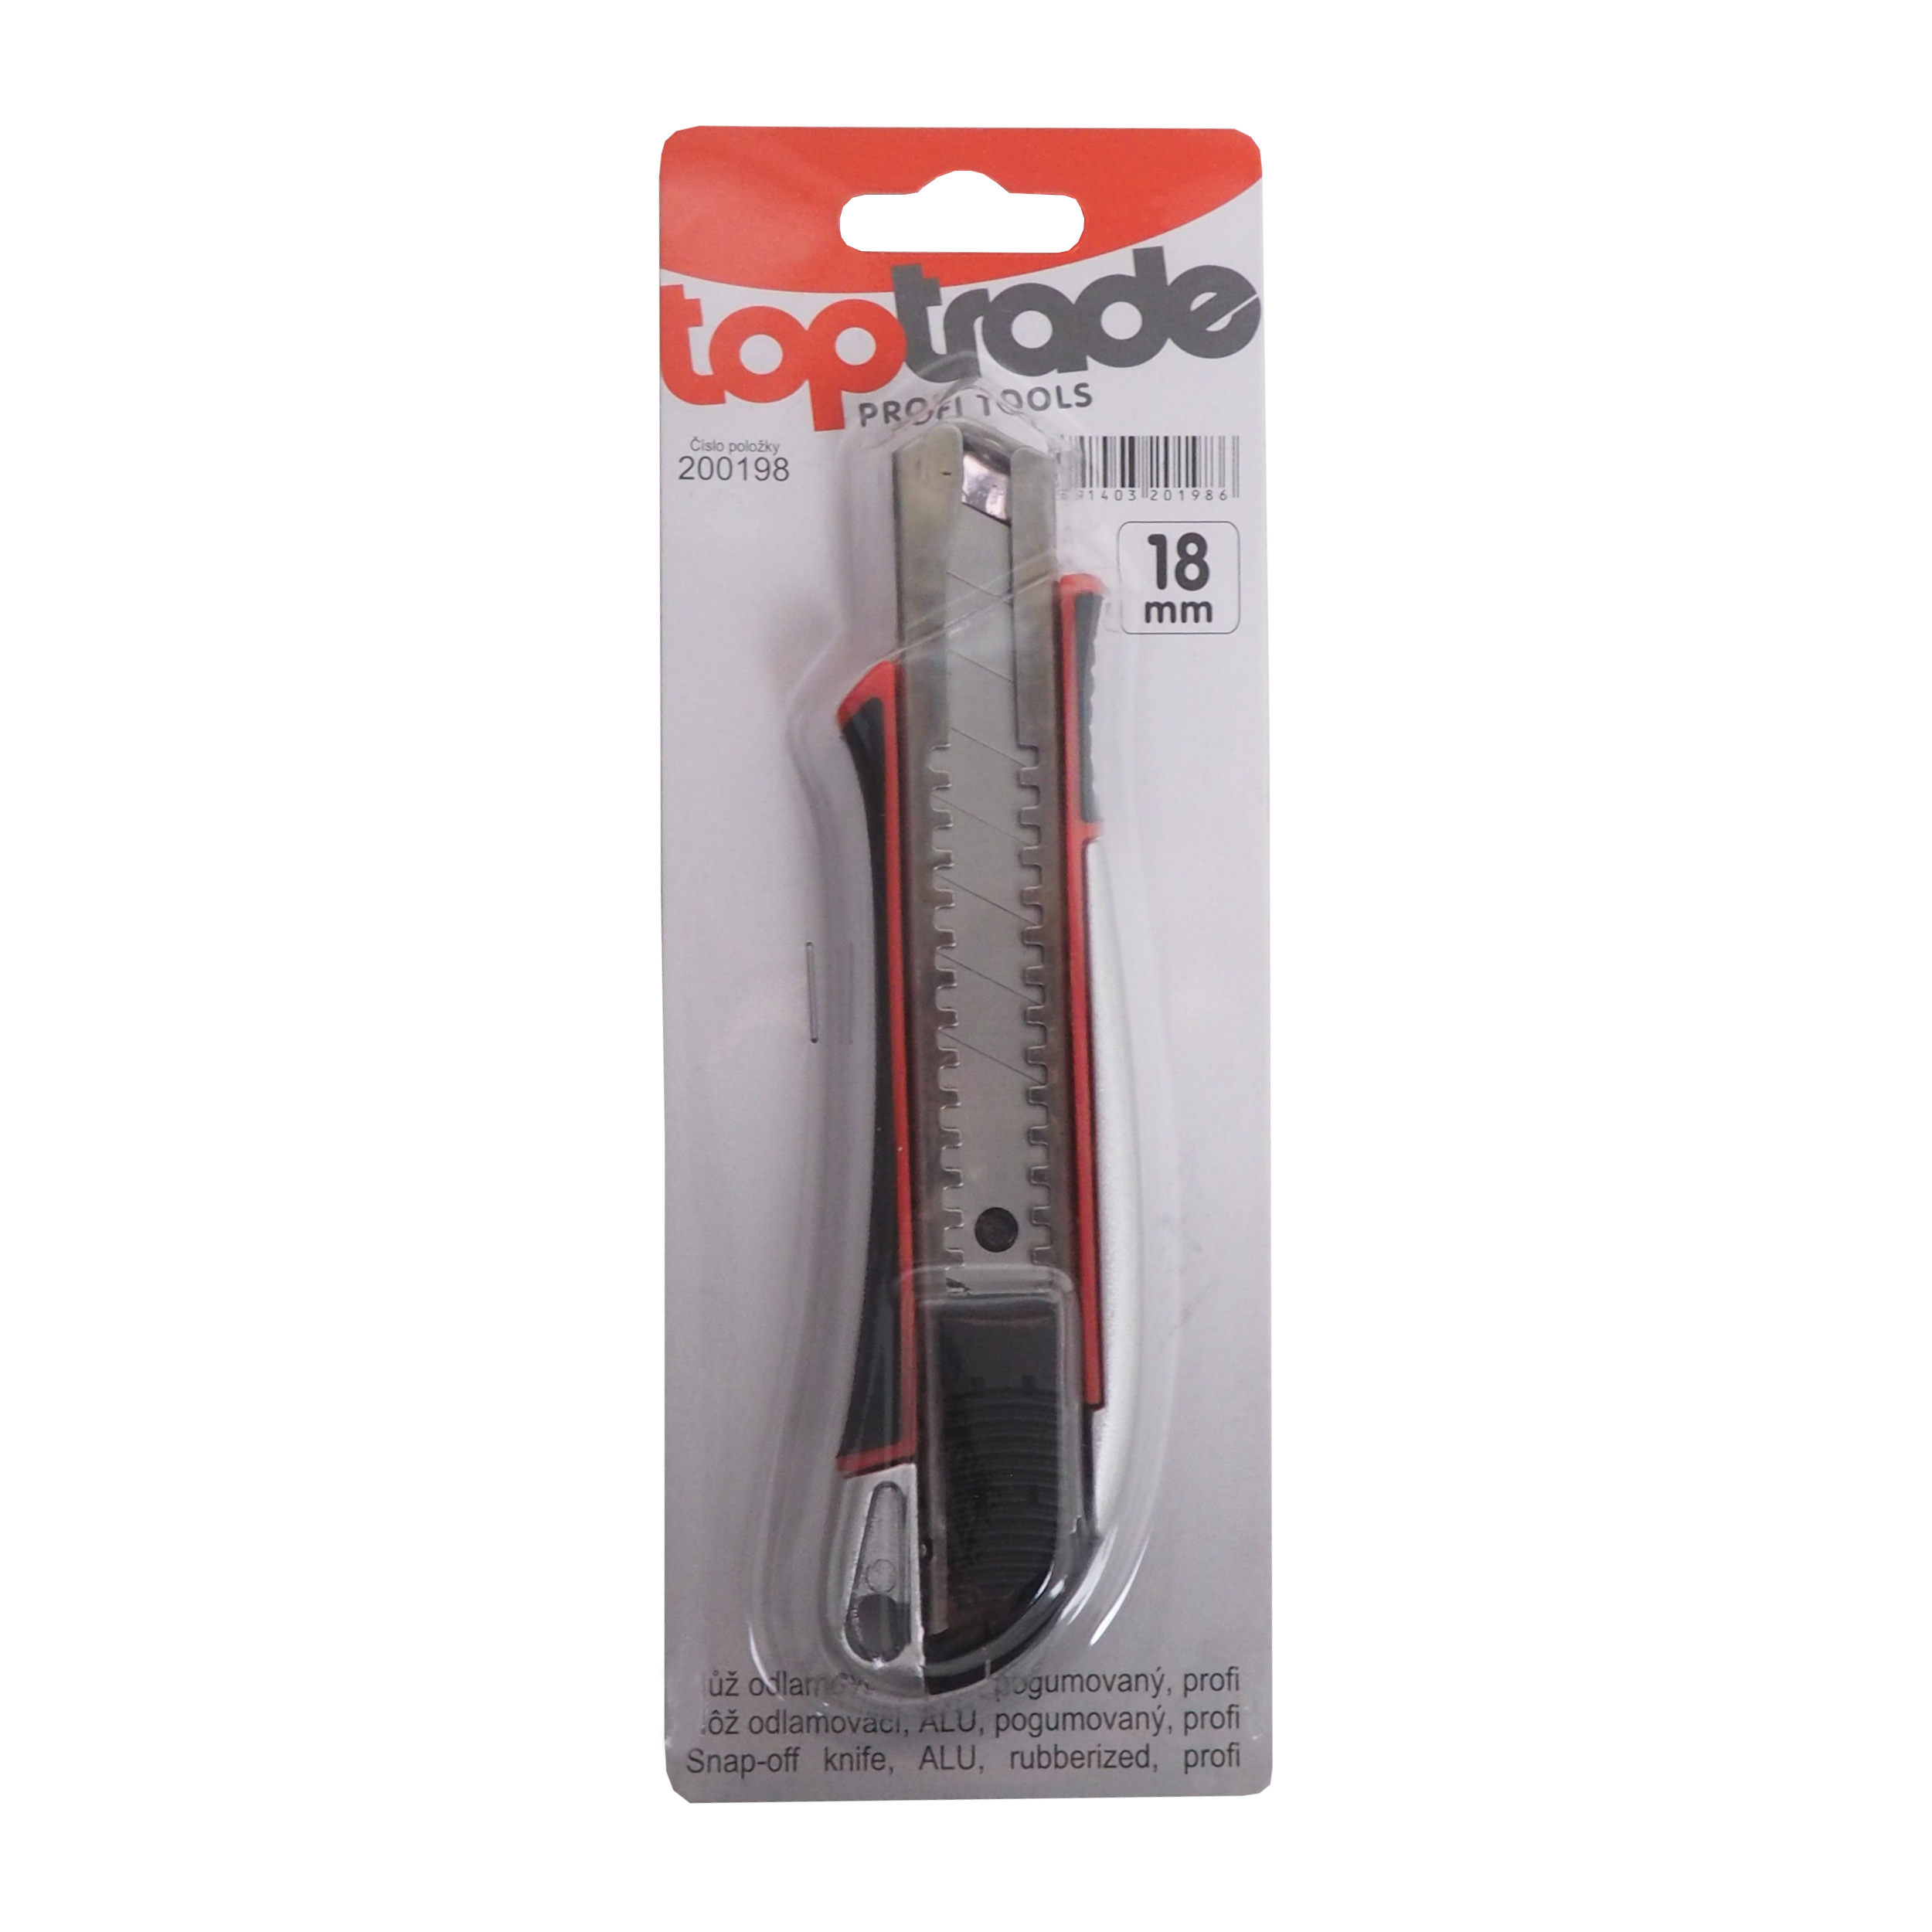 TOPTRADE nůž odlamovací, ALU, pogumovaný, 18 mm, profi 0.11 Kg TOP Sklad4 200198 650